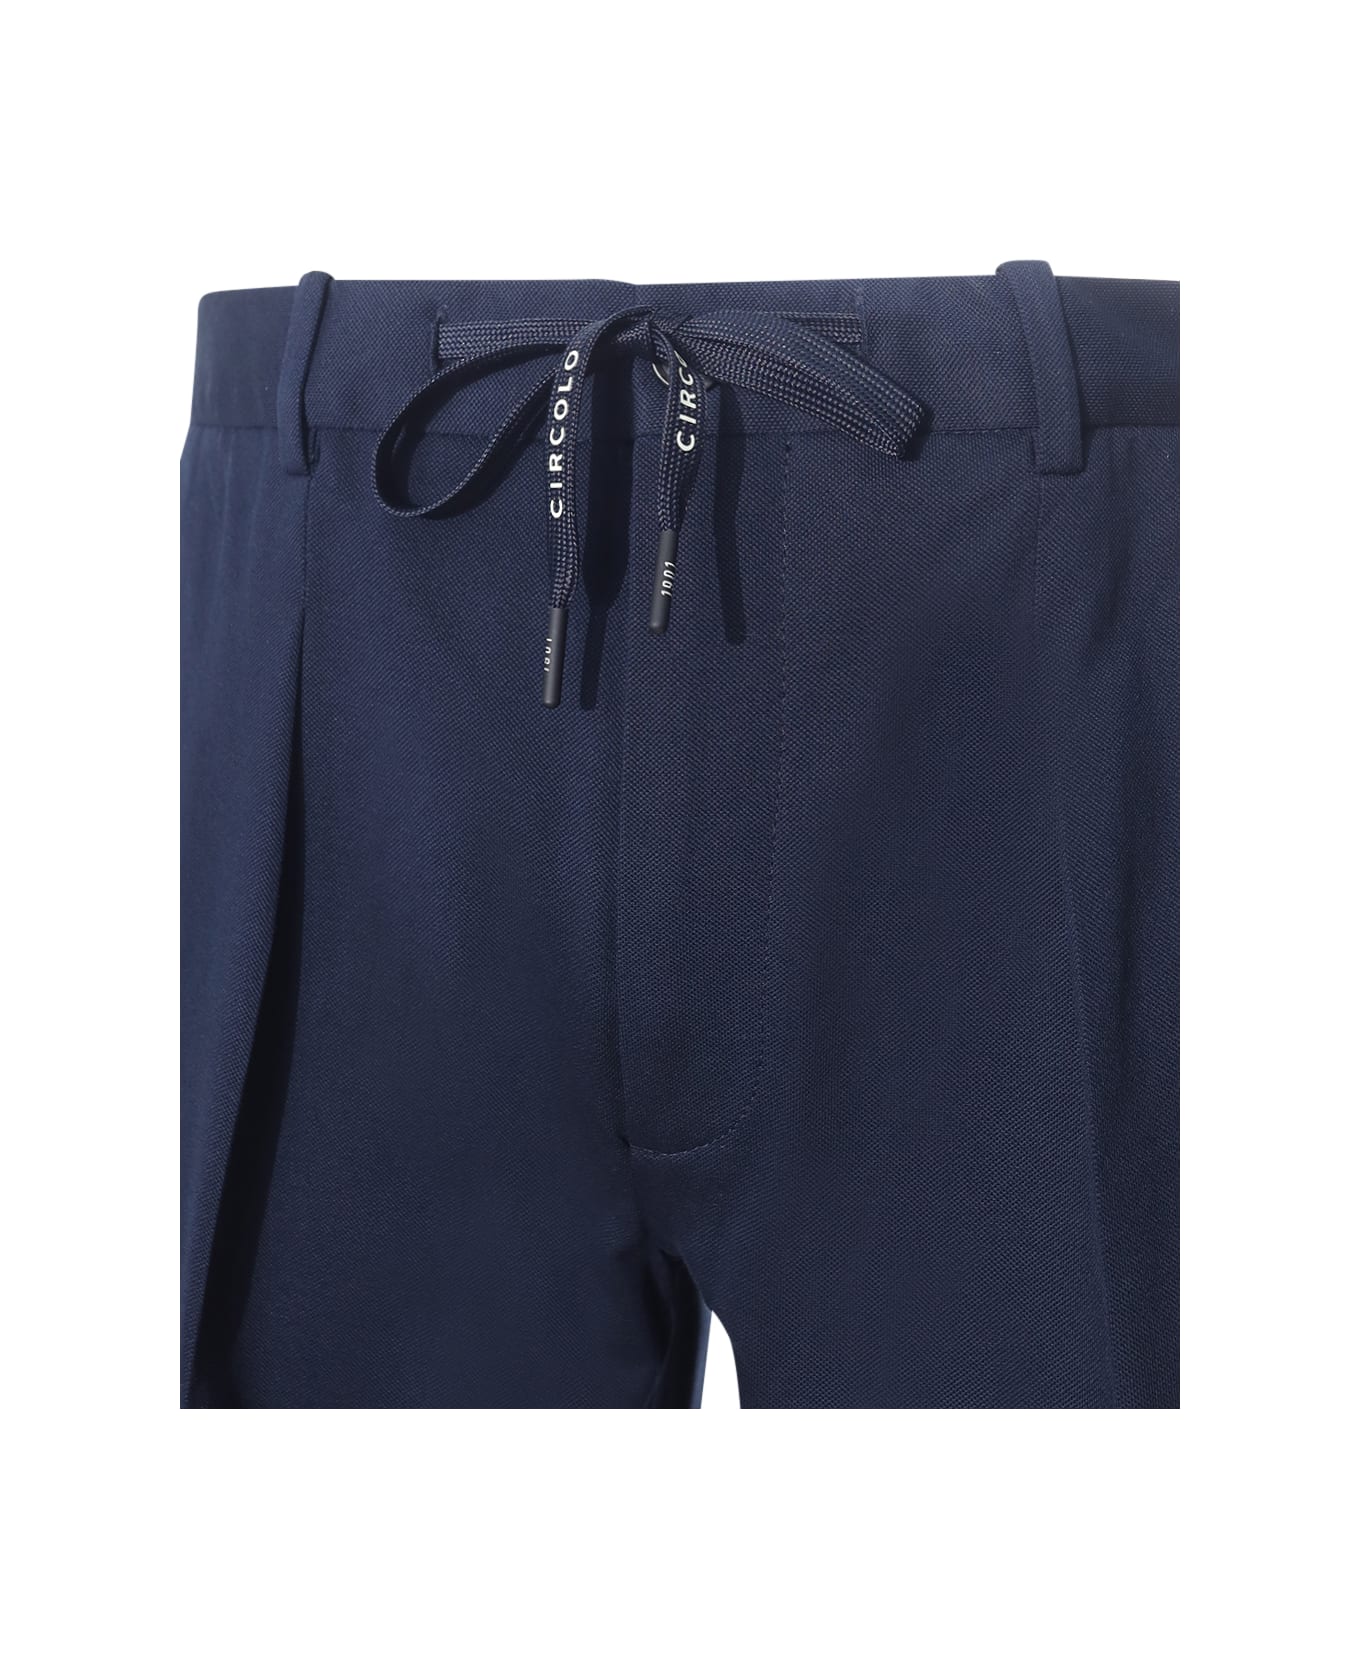 Circolo 1901 Circolo Pleated Trousers - BLUE ボトムス